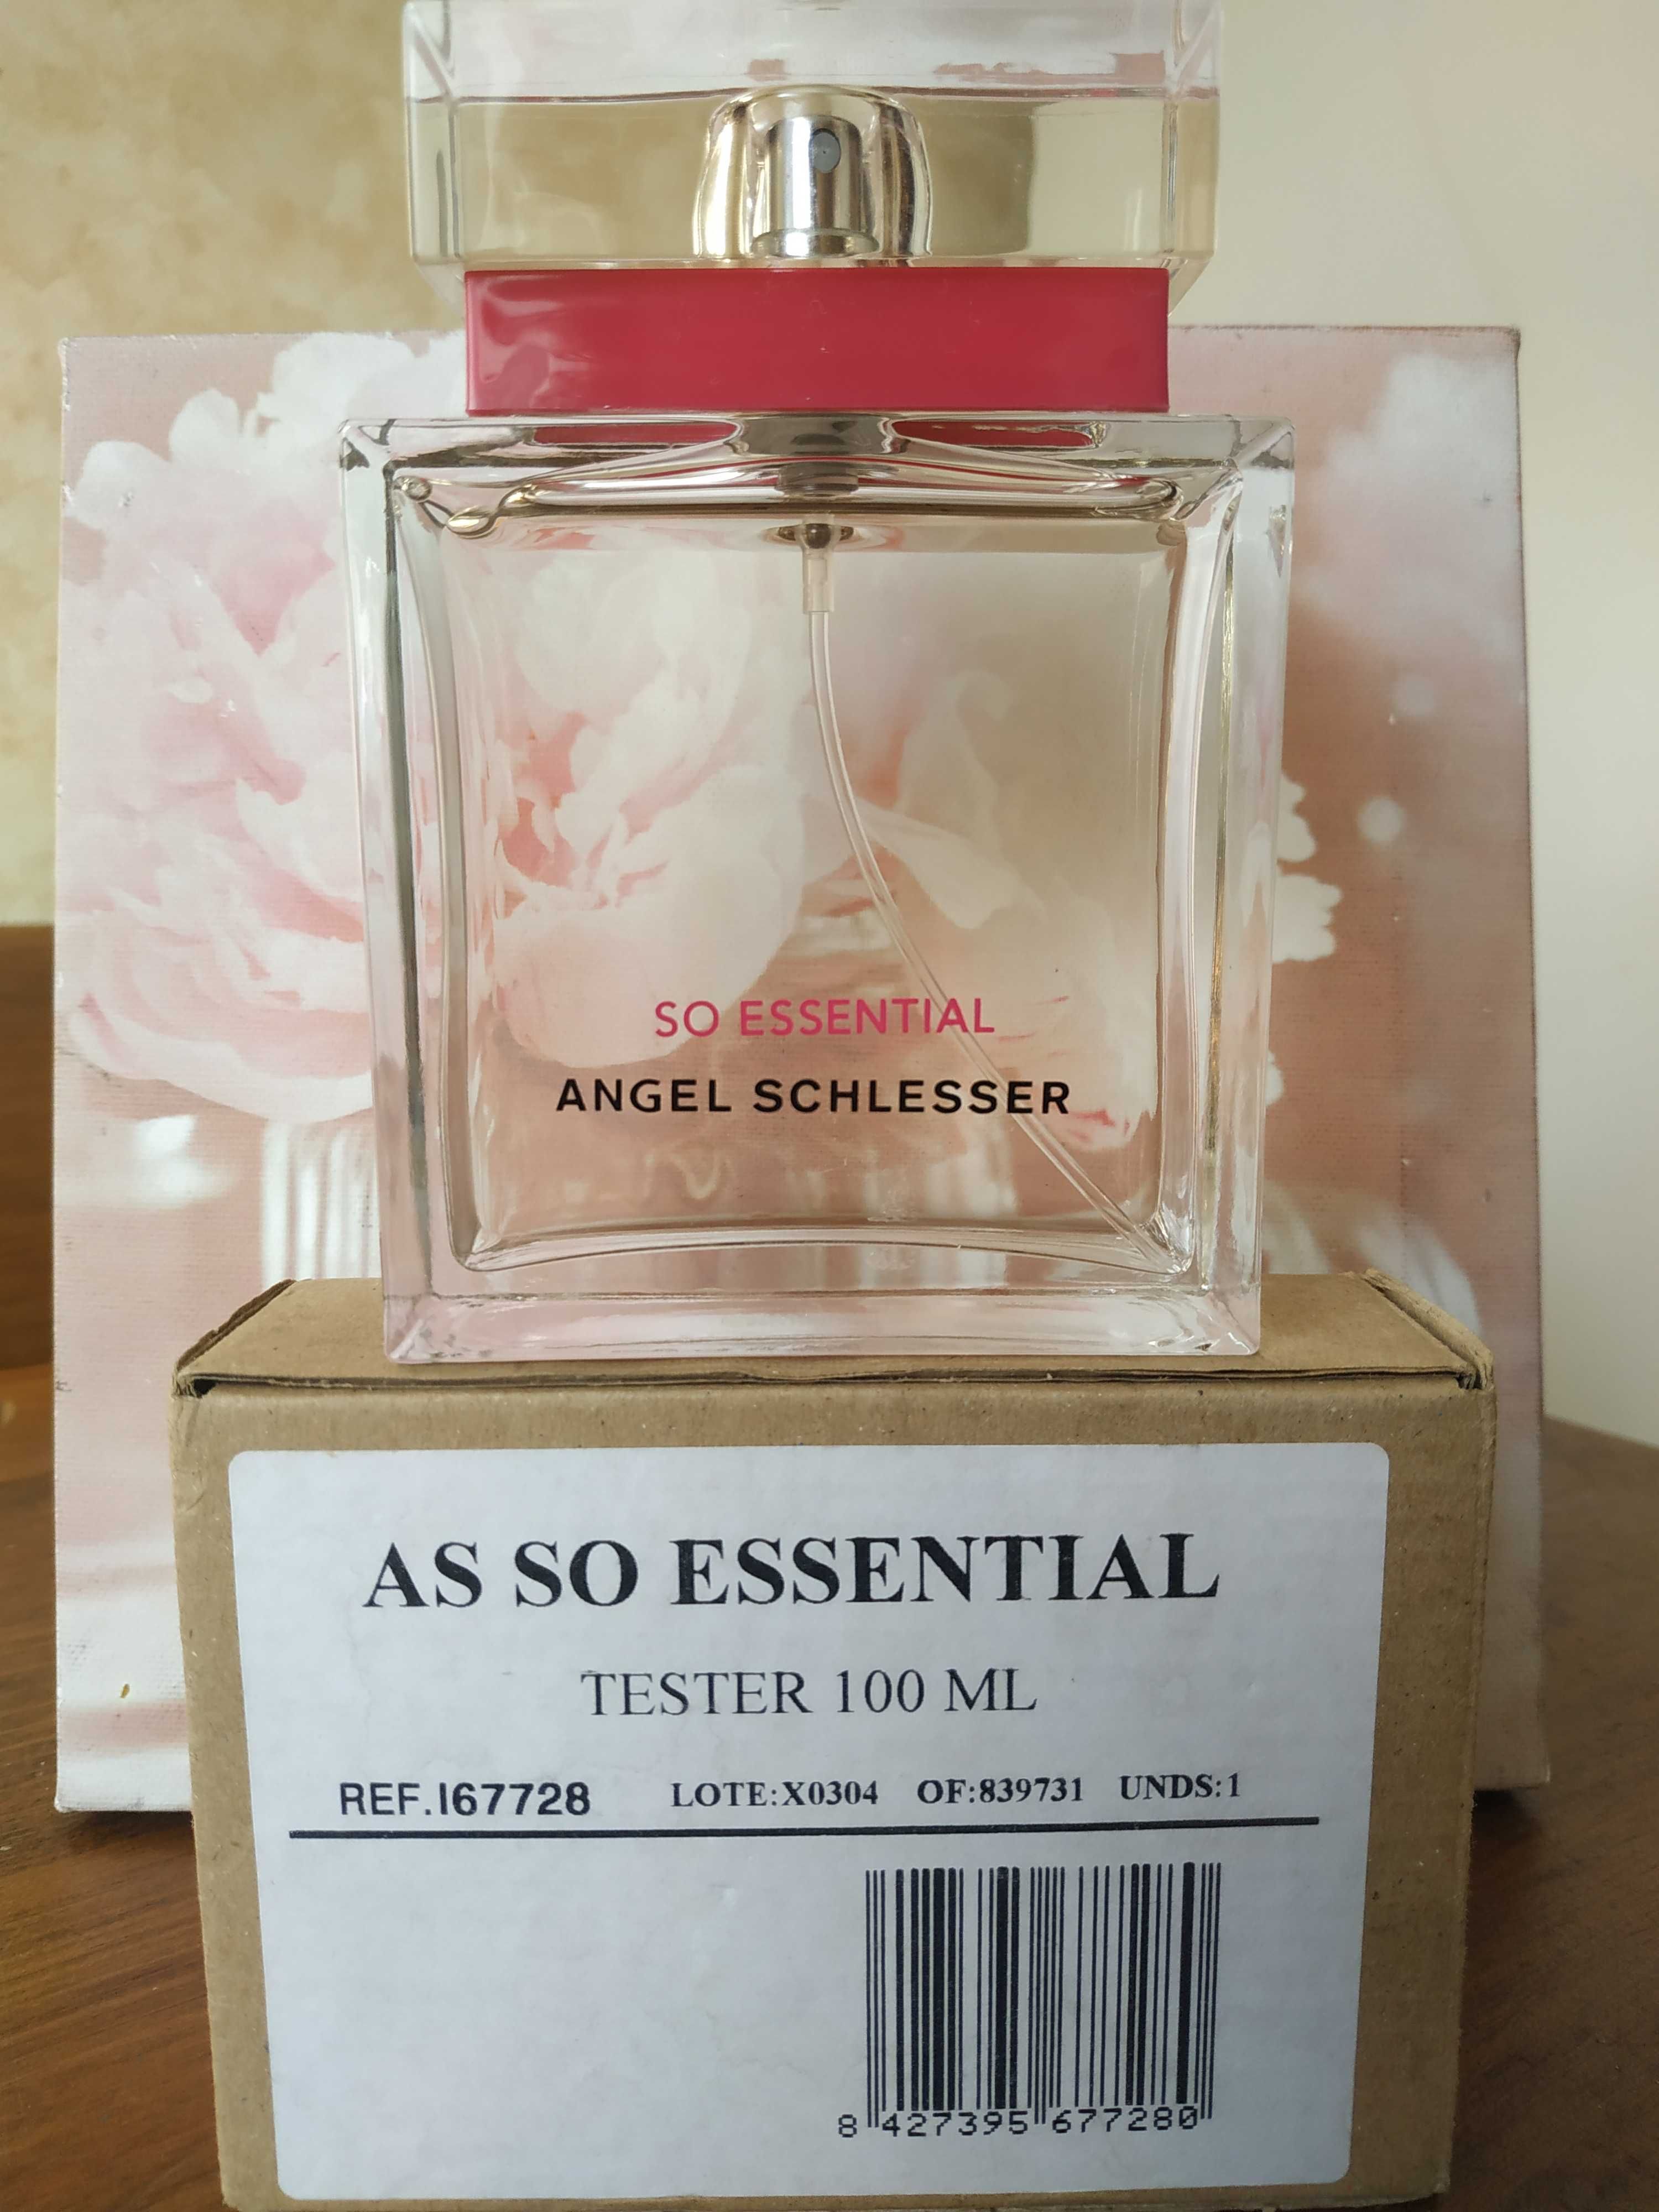 Изящный запах ангел шлессер соу эссеншиал - лучший подарок для девушки